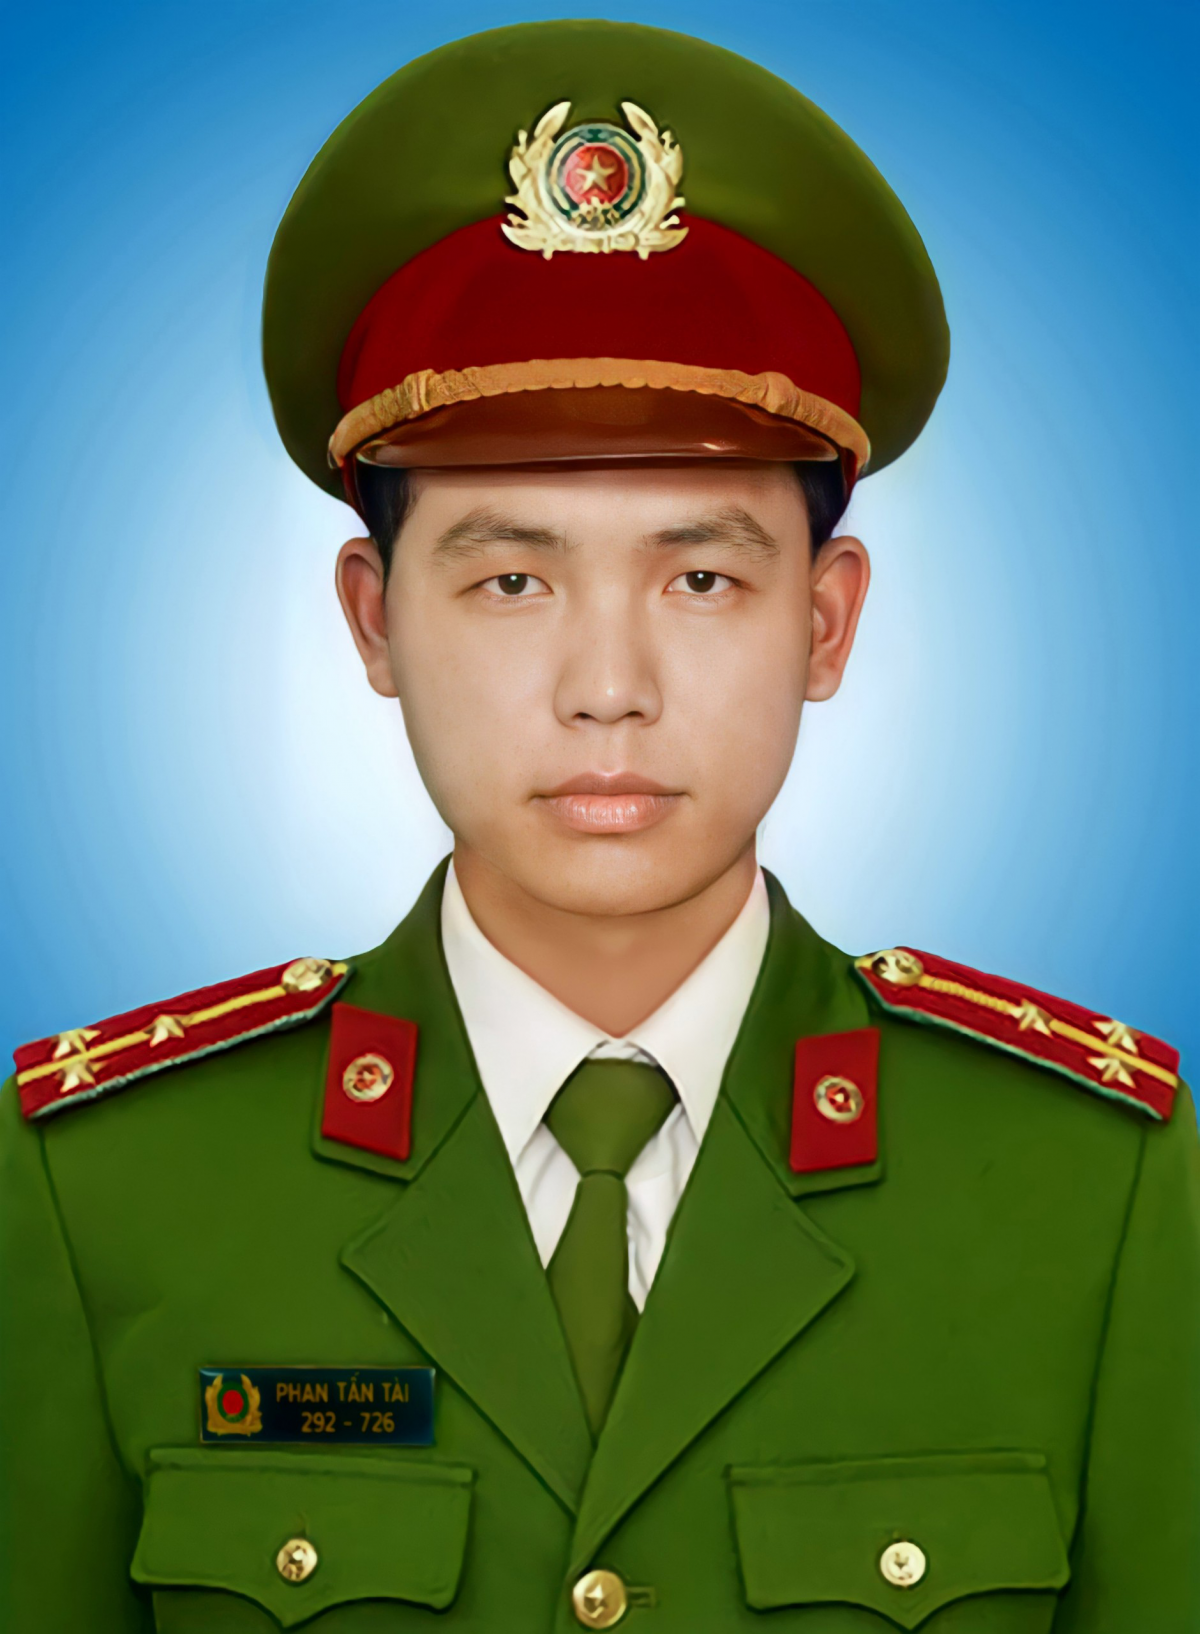 Đề nghị truy tặng Huân chương Chiến công hạng Nhì cho Thượng úy Phan Tấn Tài